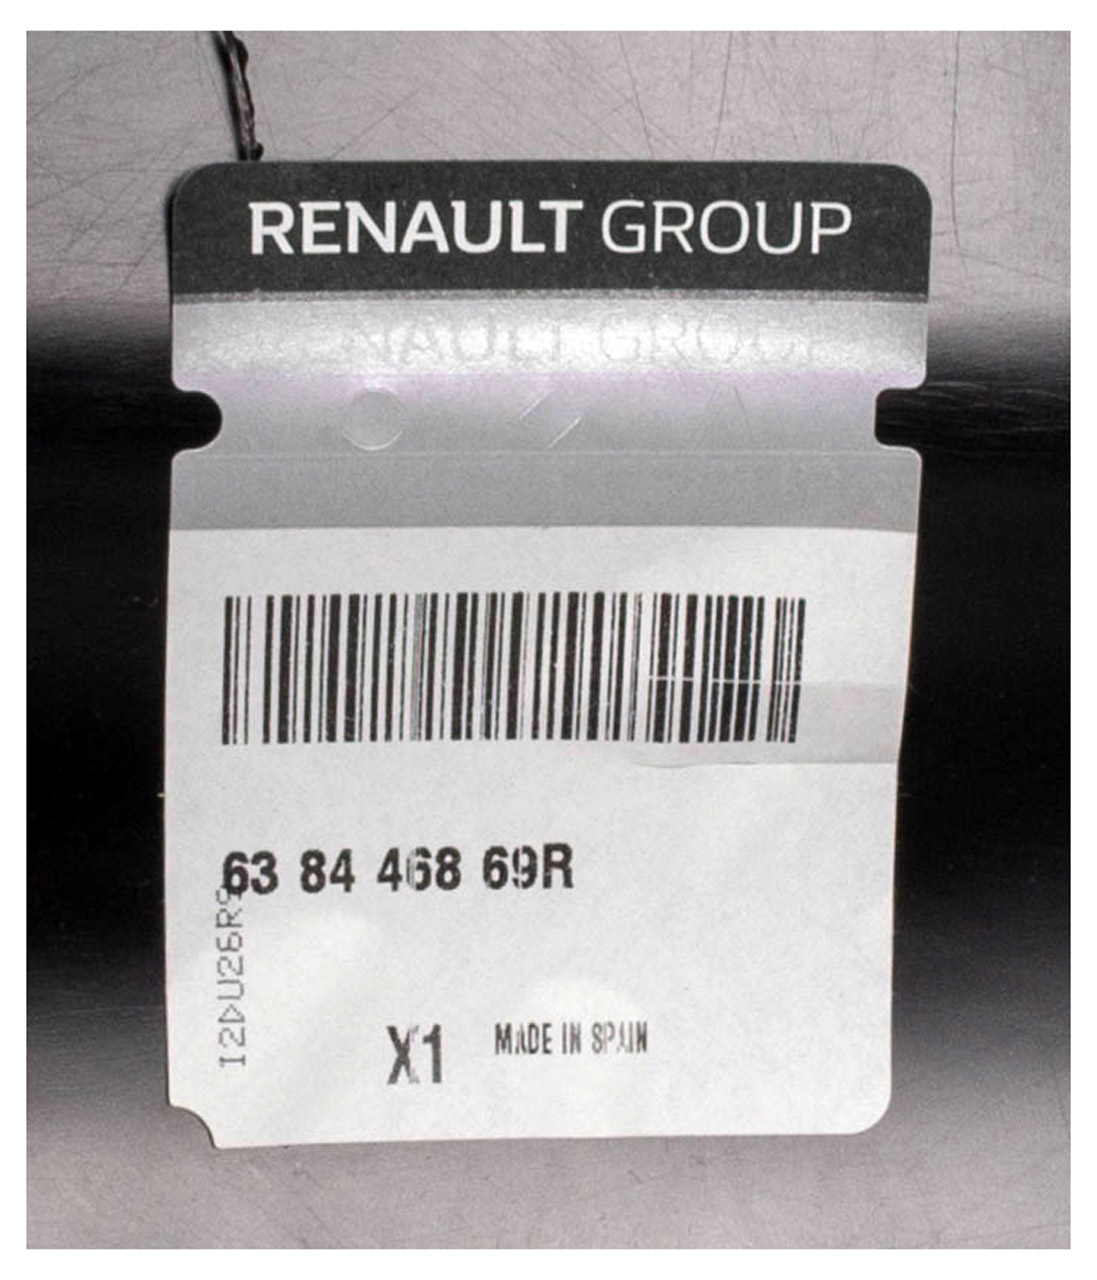 ORIGINAL Renault Kotflügelverkleidung Radhaus CAPTUR vorne rechts 638446869R